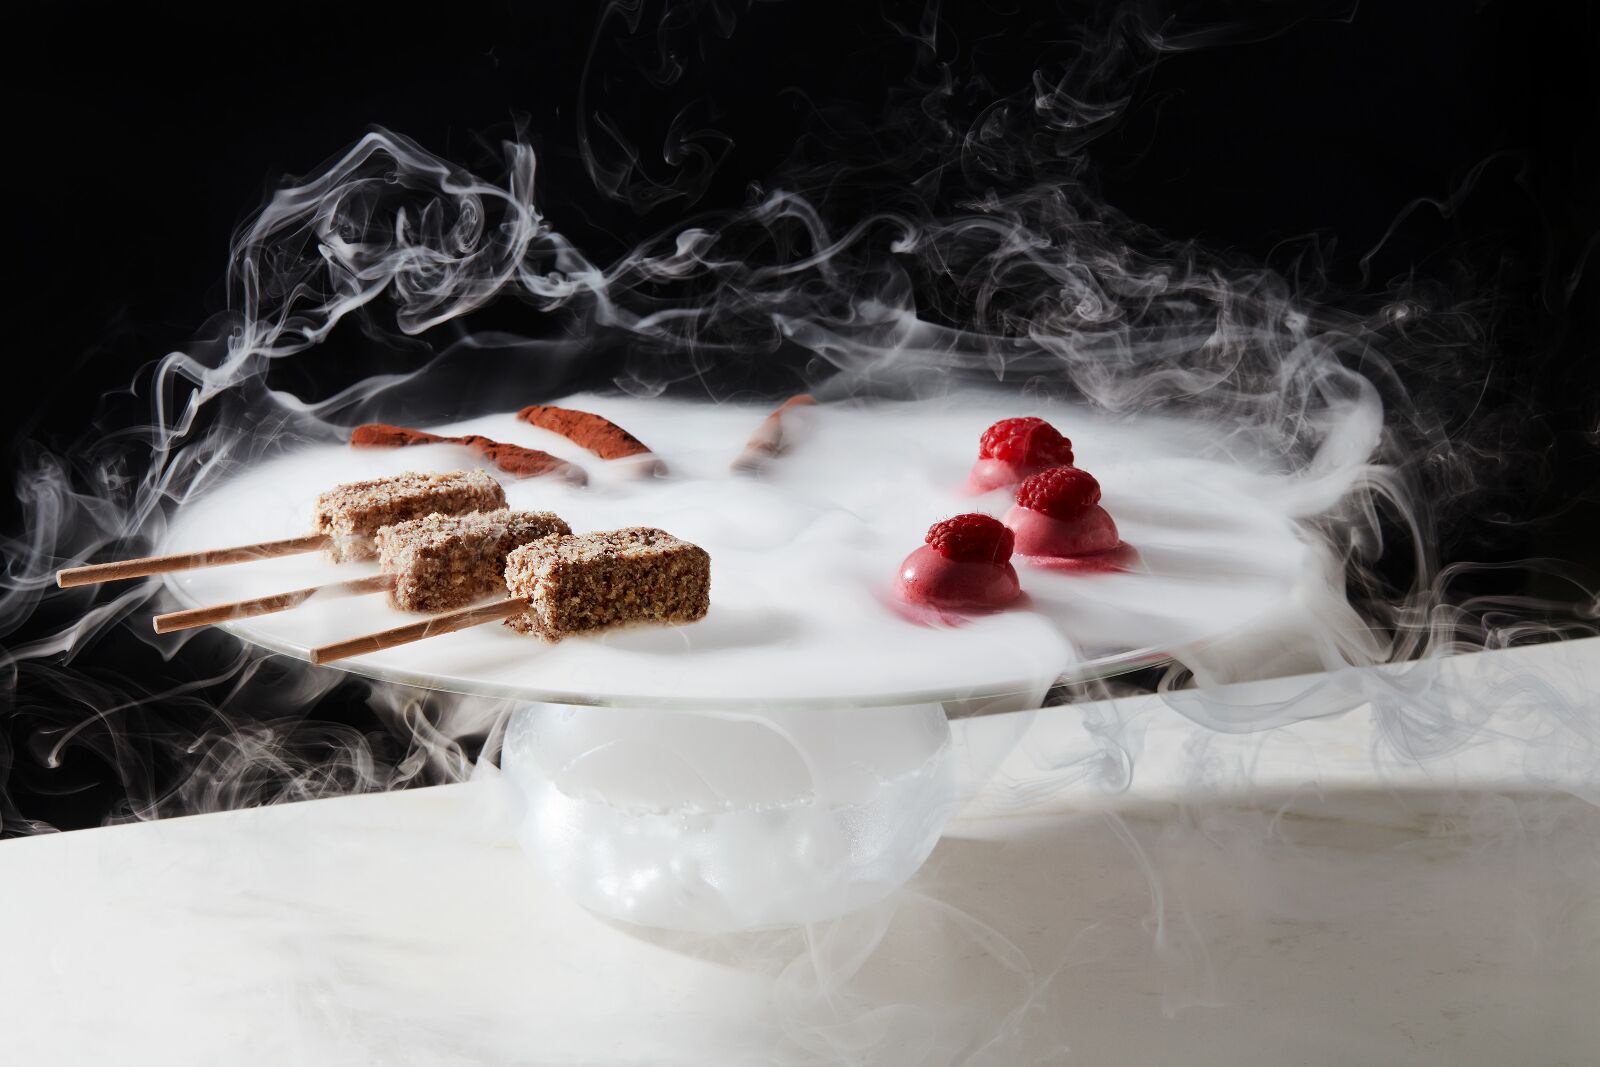 Desserts with liquid nitrogen, Toronto Michelin Guide